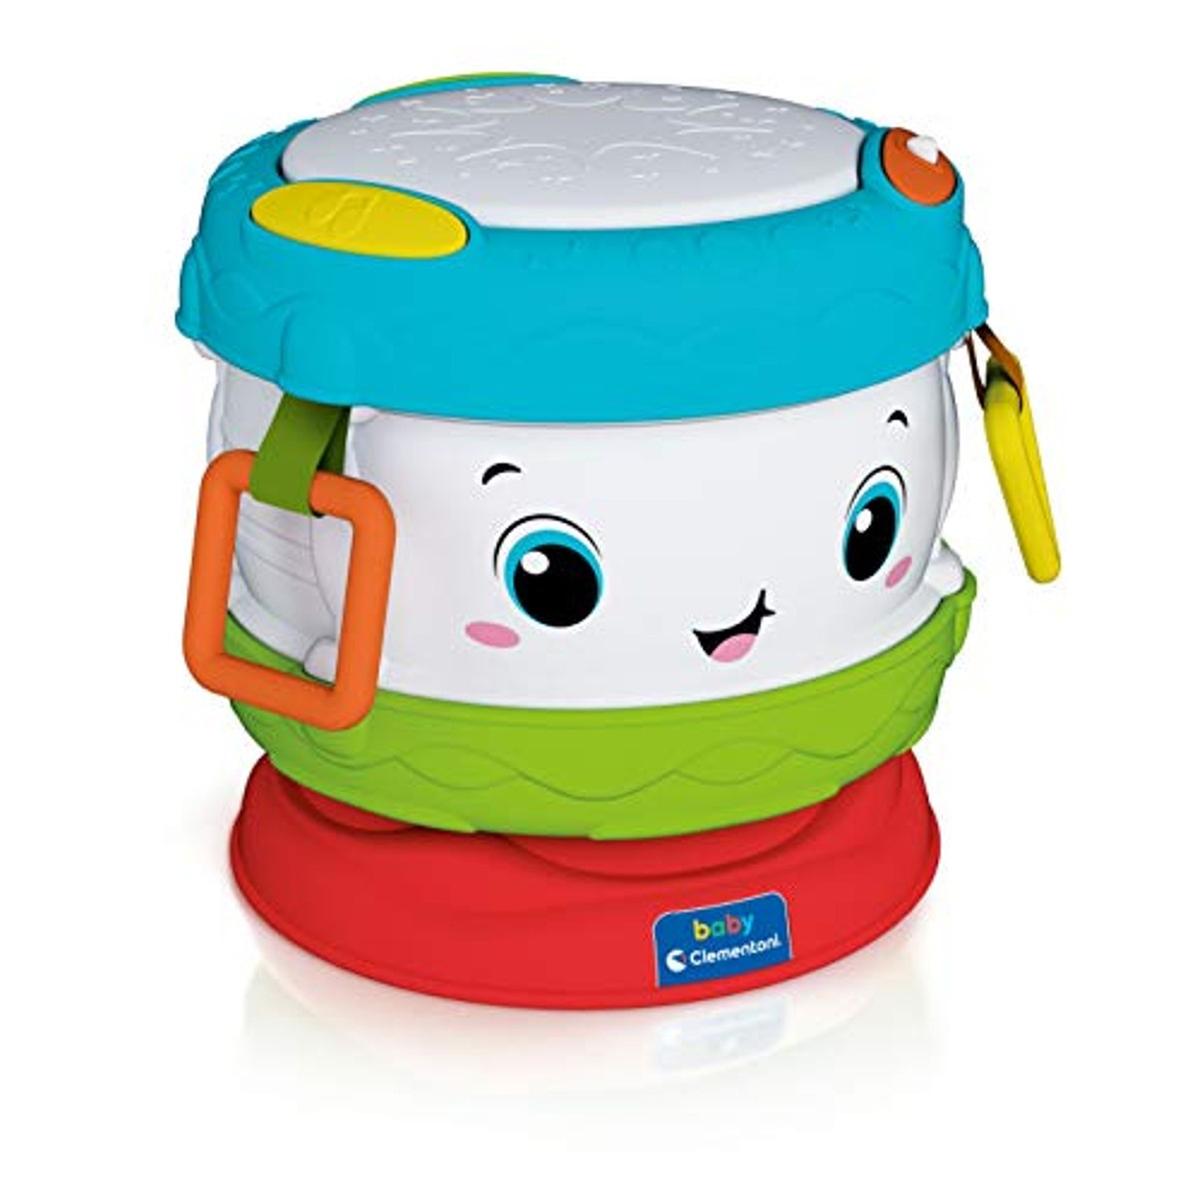 Clementoni - Brinquedo didático Baby Activity com som de tambor ㅤ, Clementoni